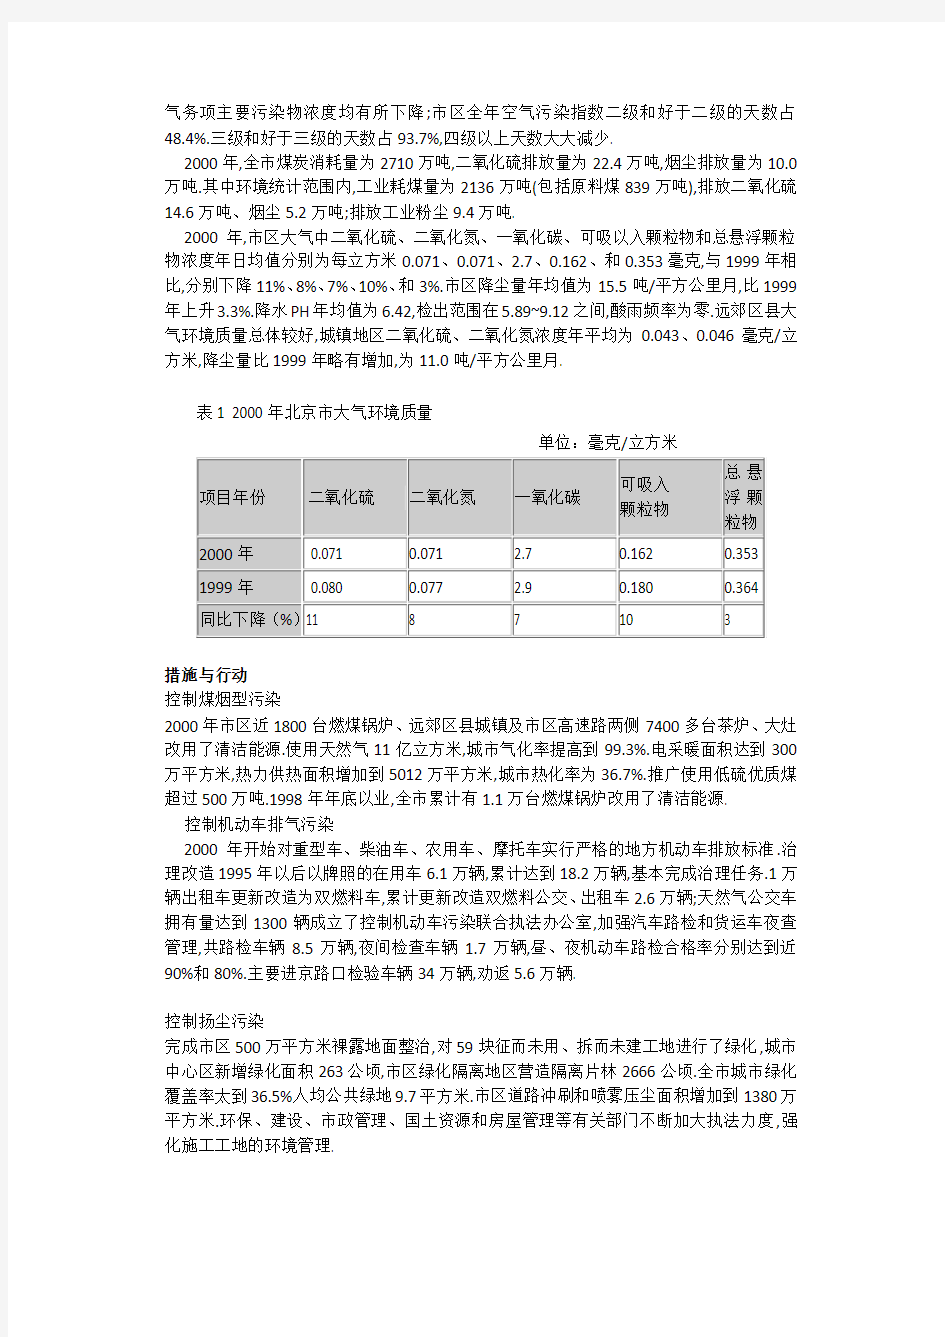 2000年北京市环境状况公报